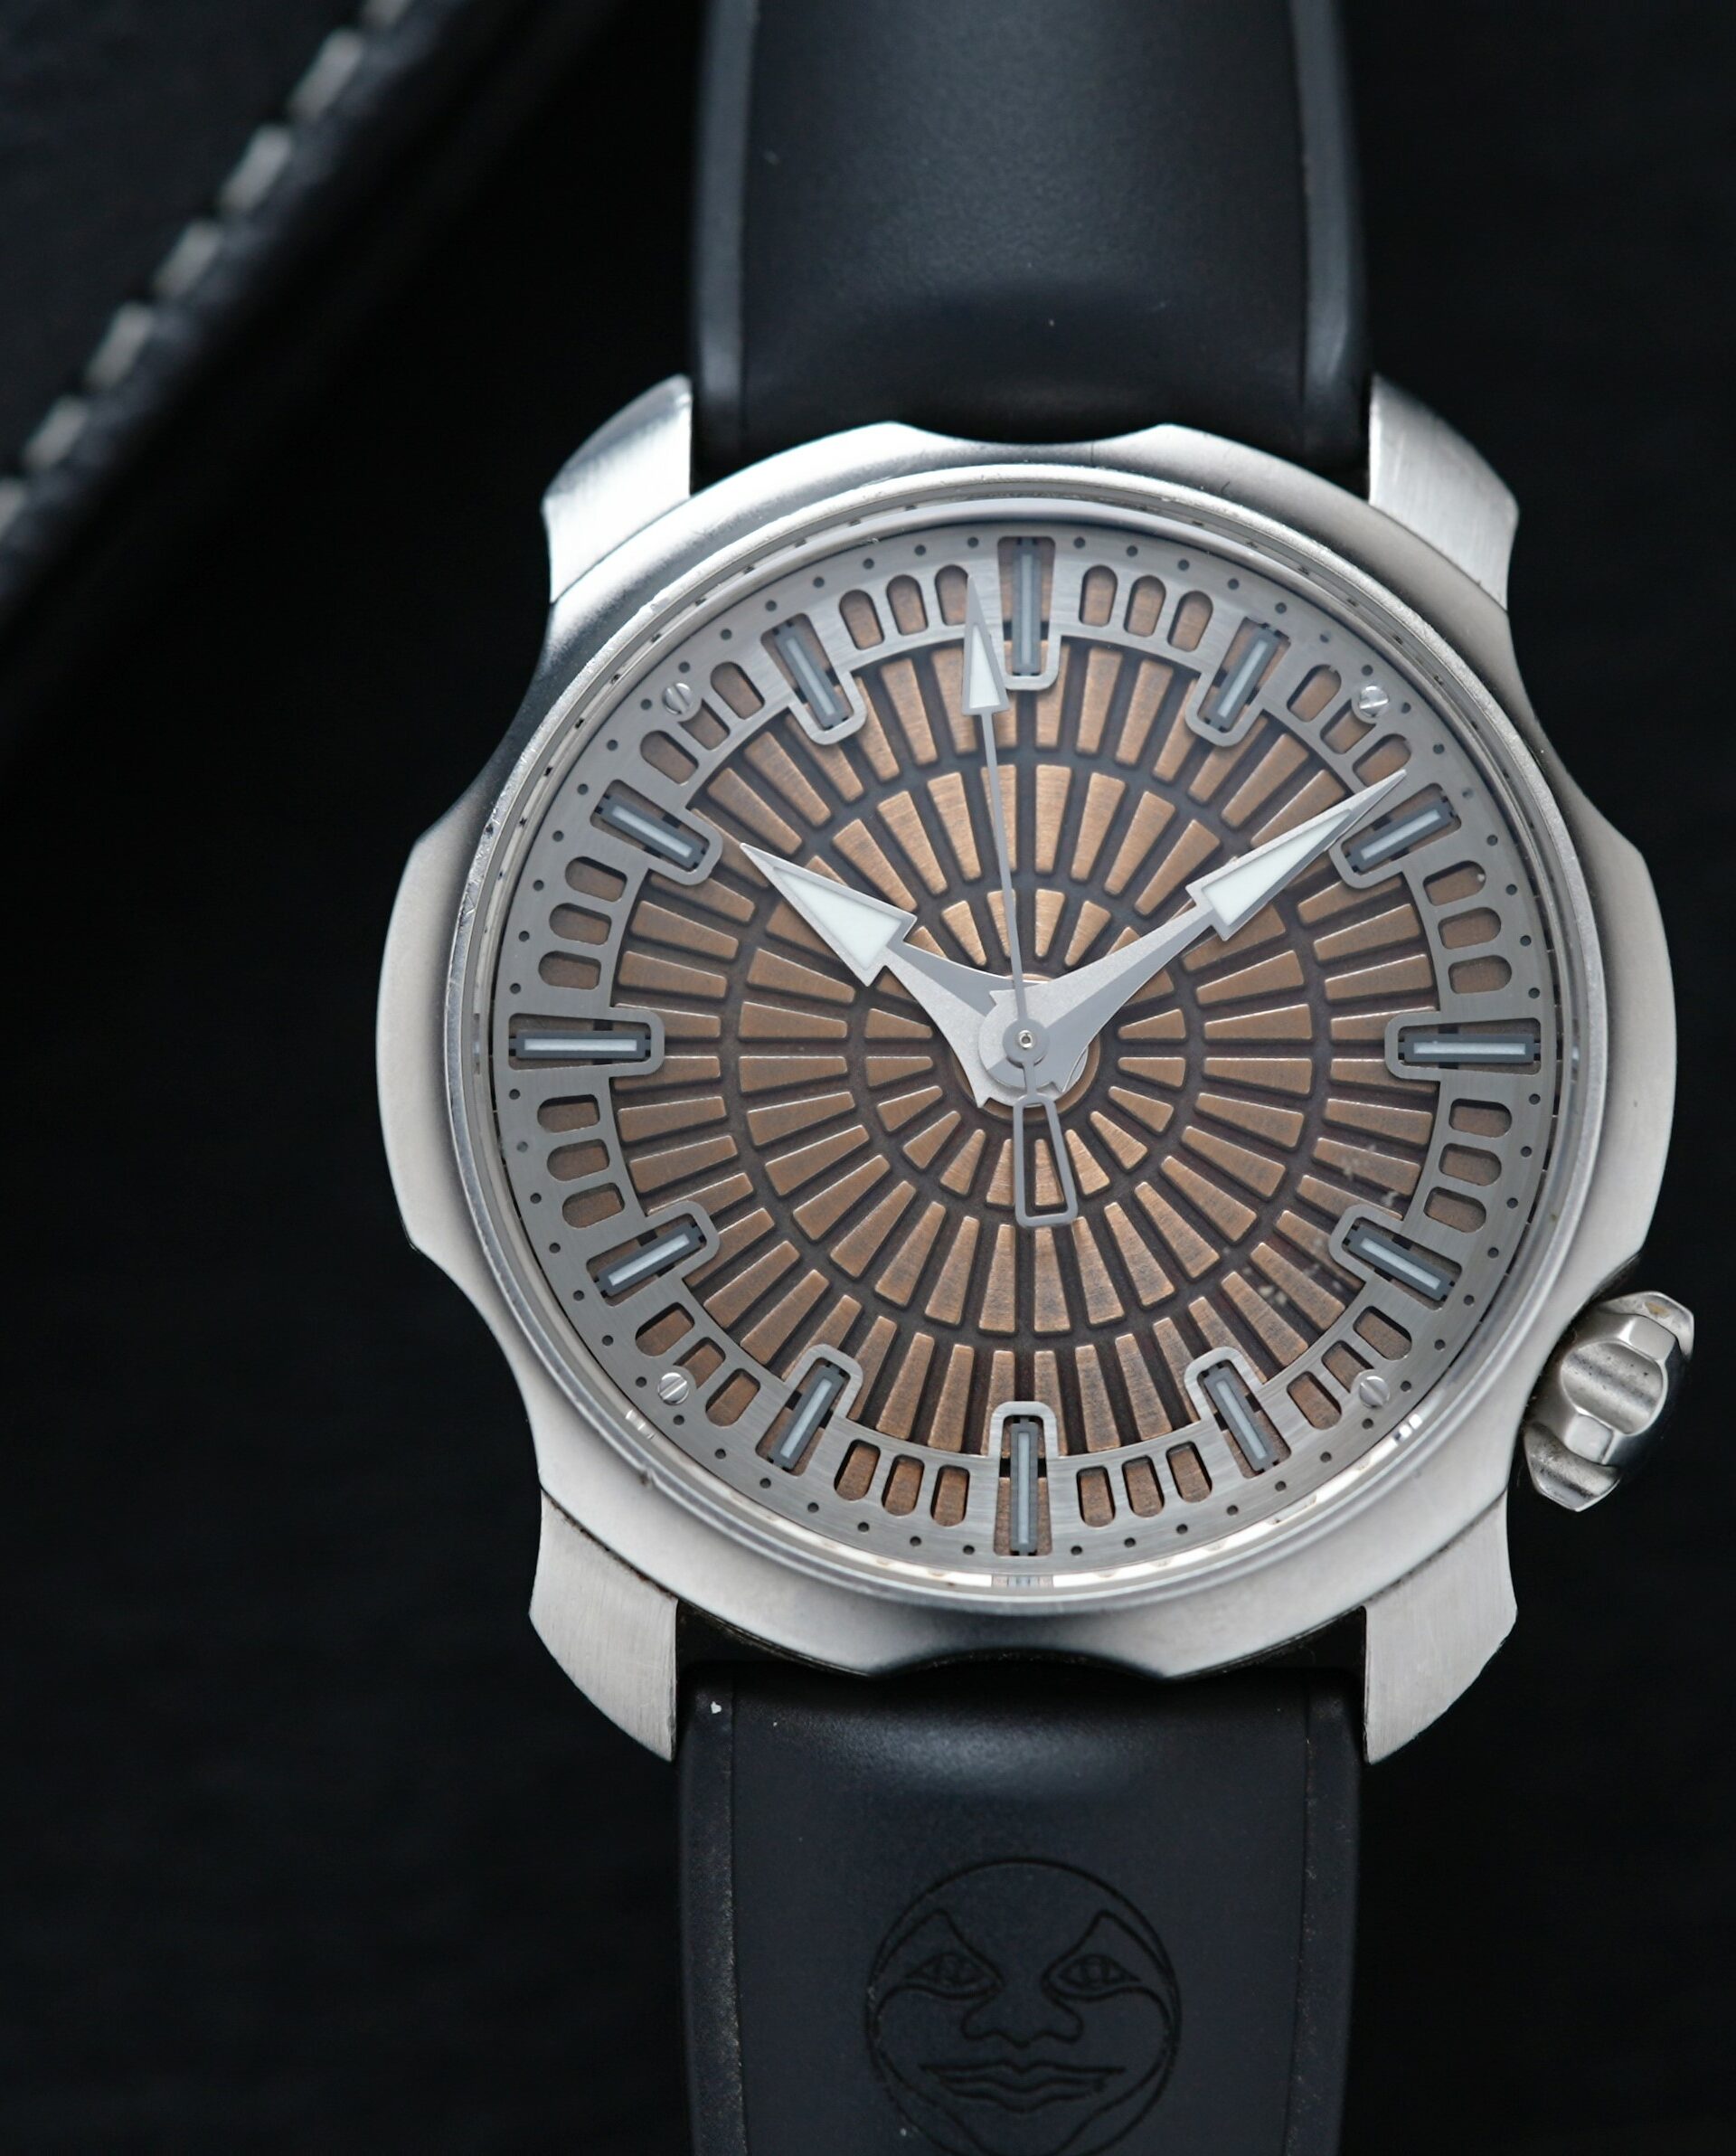 Sarpaneva Super1 watch featured under white light with binder in background.